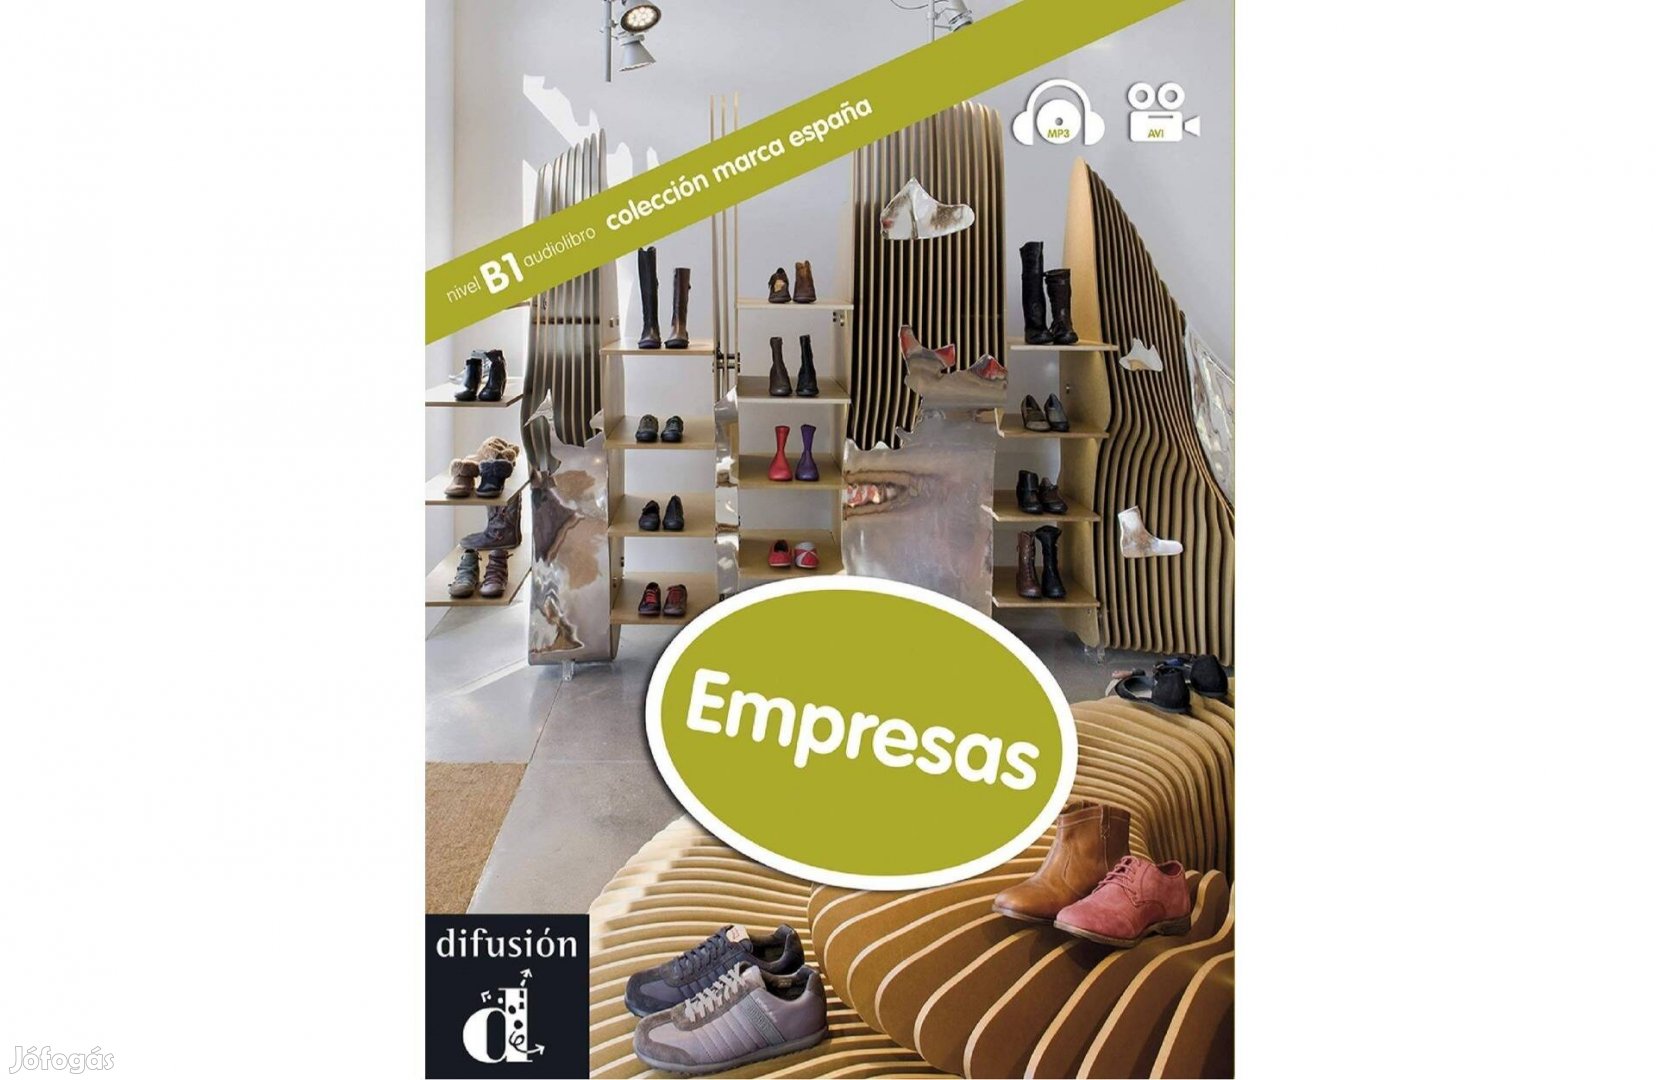 Empresas - nivel B1 audiolibro - Colección marca espana + DVD